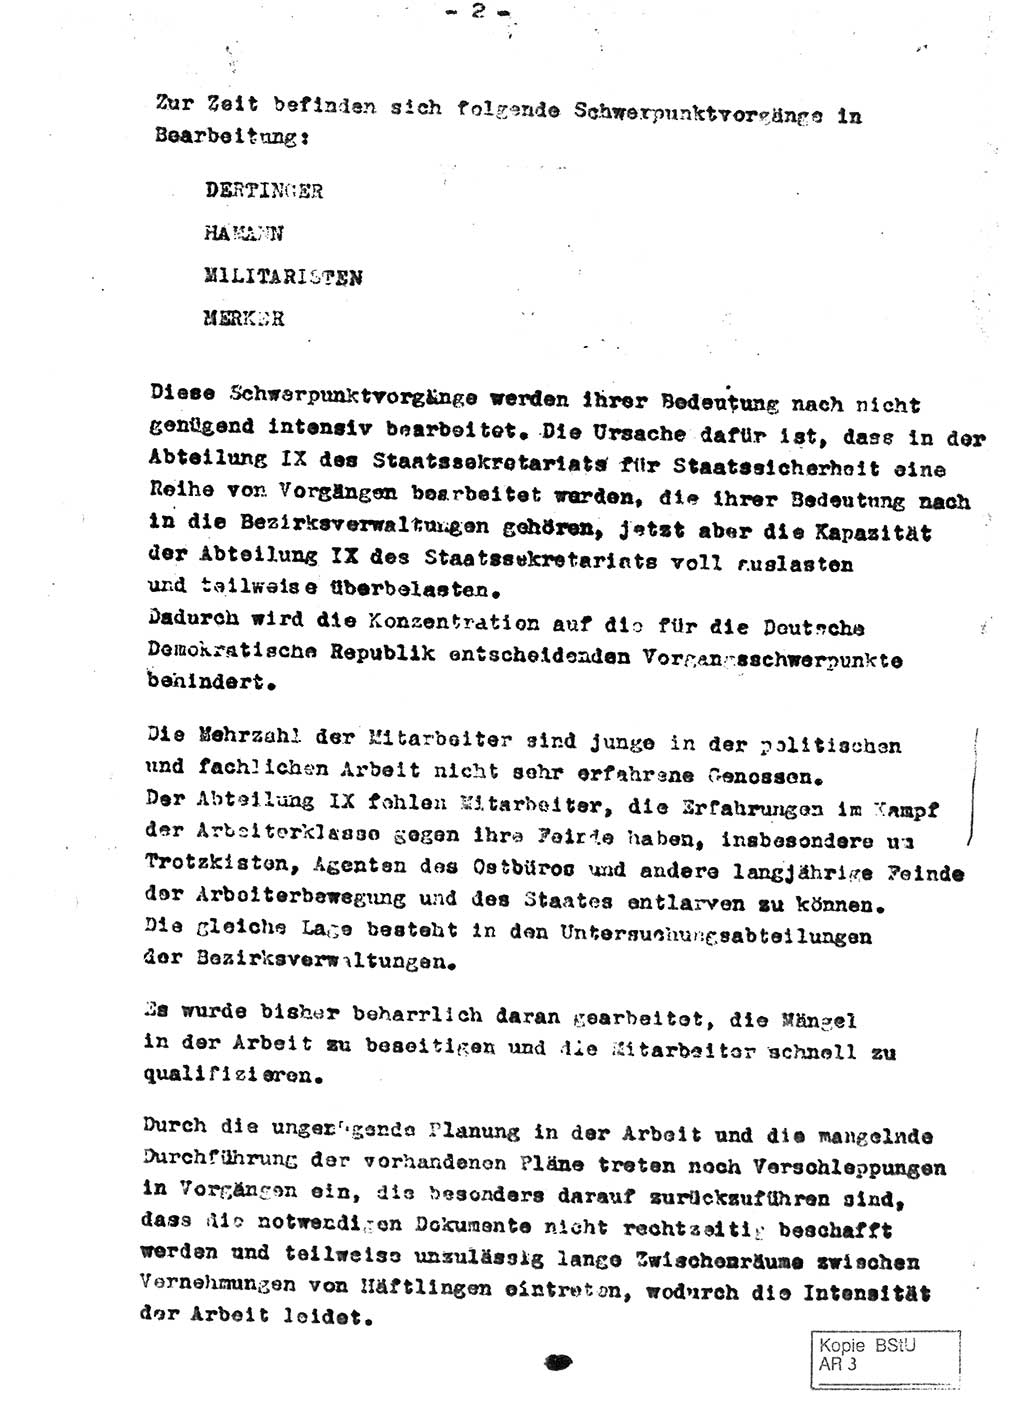 Staatssekretariat für Staatssicherheit (SfS) [Deutsche Demokratische Republik (DDR)], Abteilung (Abt.) Ⅸ, Berlin 1953, Seite 2 (Ber. SfS DDR Abt. Ⅸ /53 1953, S. 2)